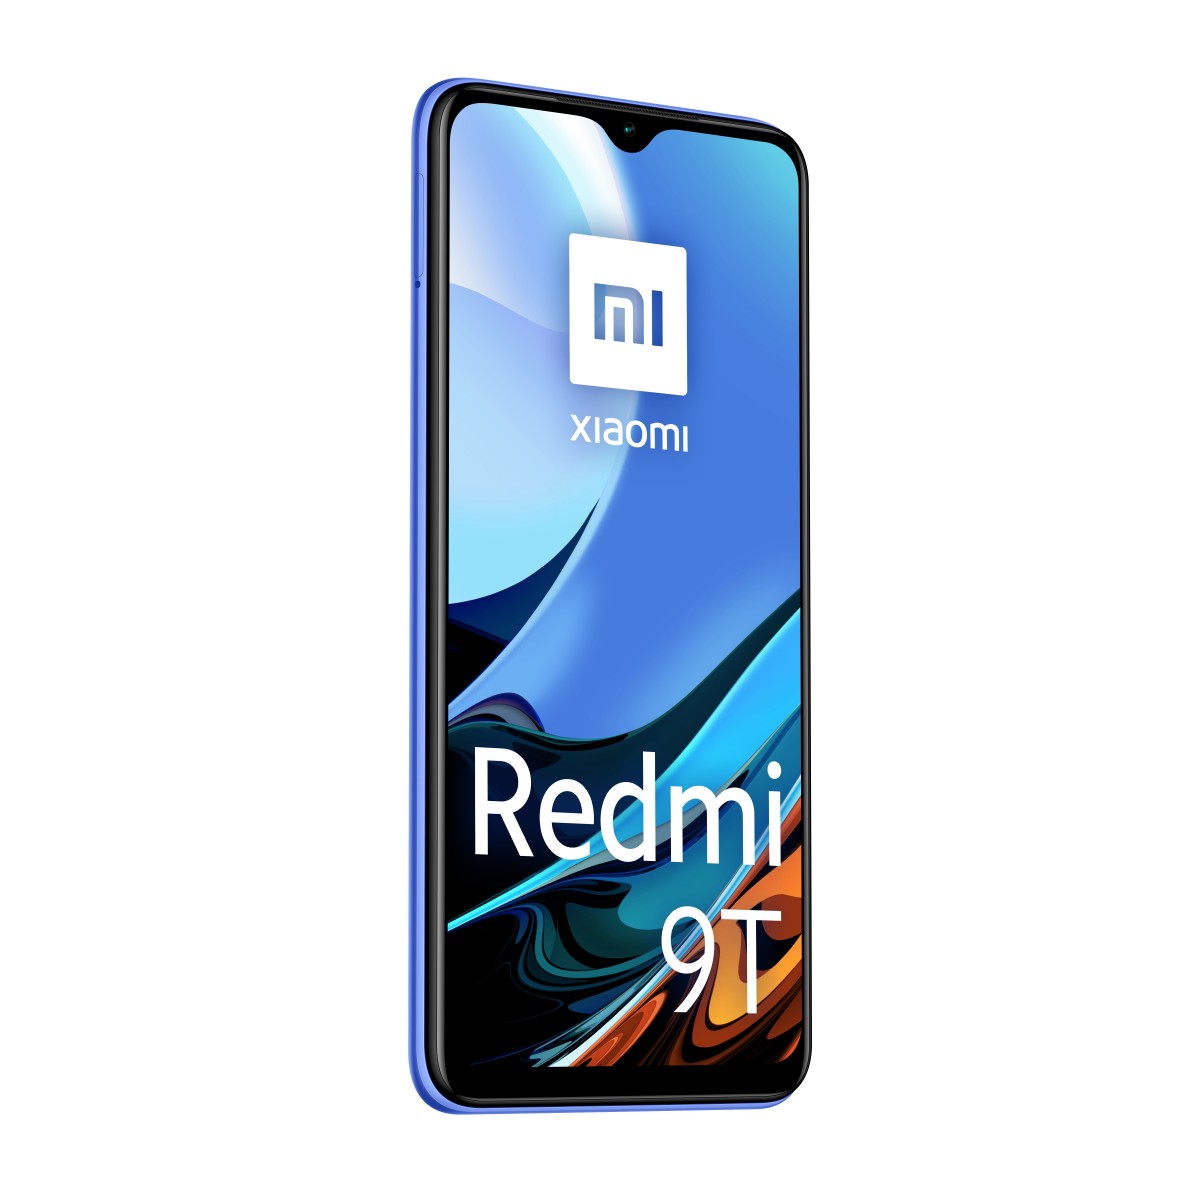 Xiaomi REDMI 9 - Smartphone - 8 MP 64 GB - Blau